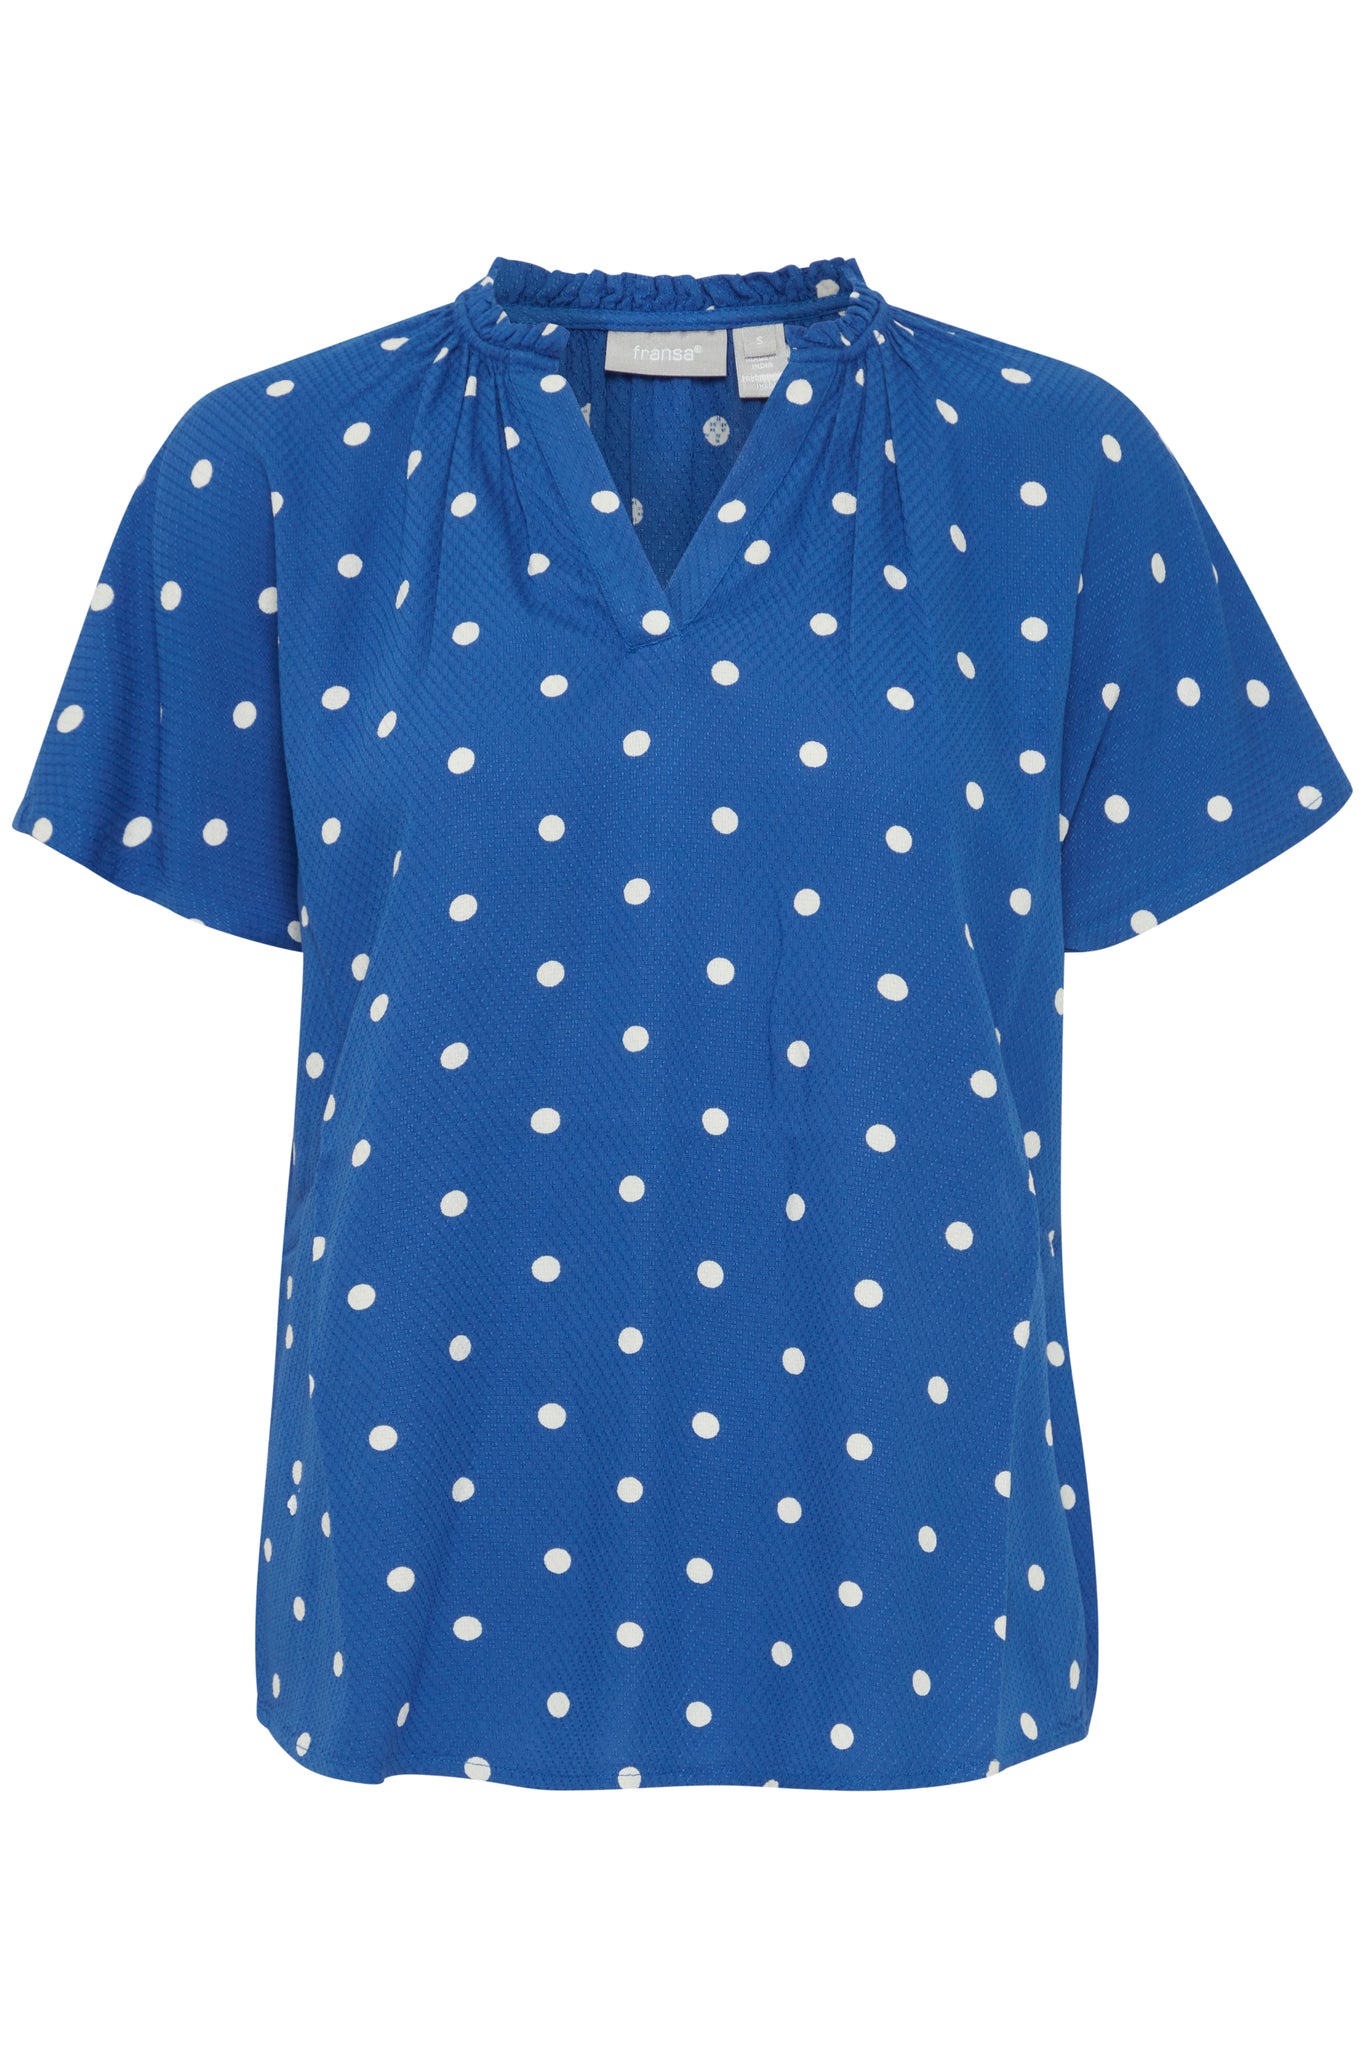 Fransa Polka dot blouse short sleeve Blue White Print 20613491 2